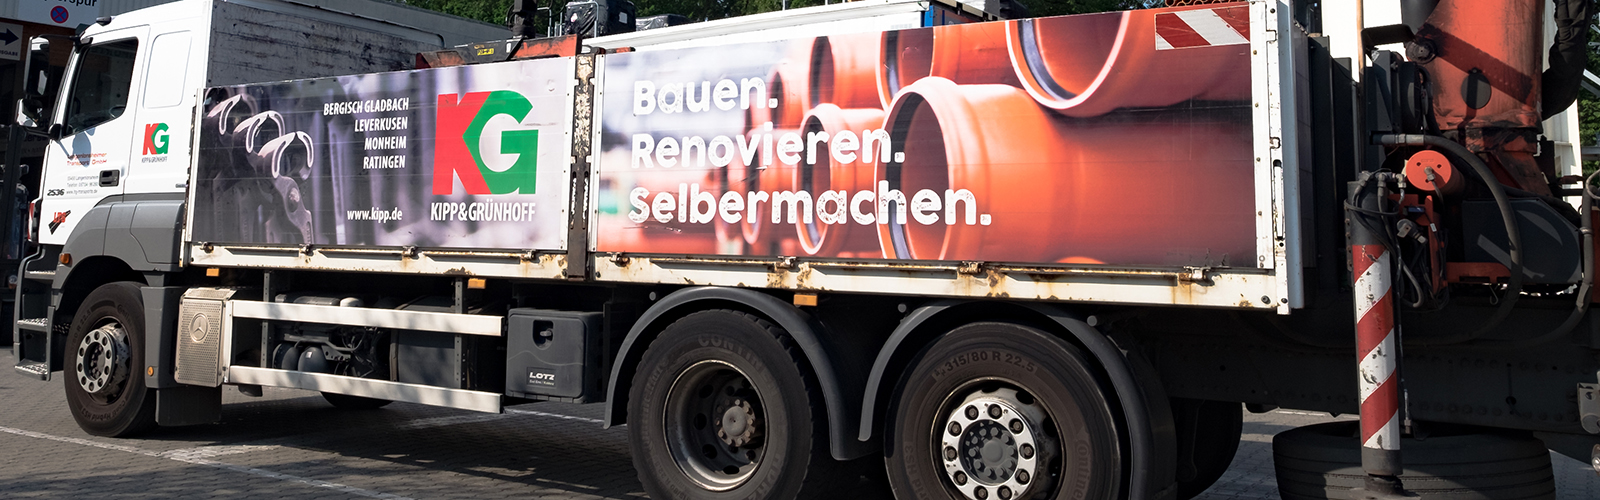 Lieferservice für Baustoffe & Schüttgüter in NRW